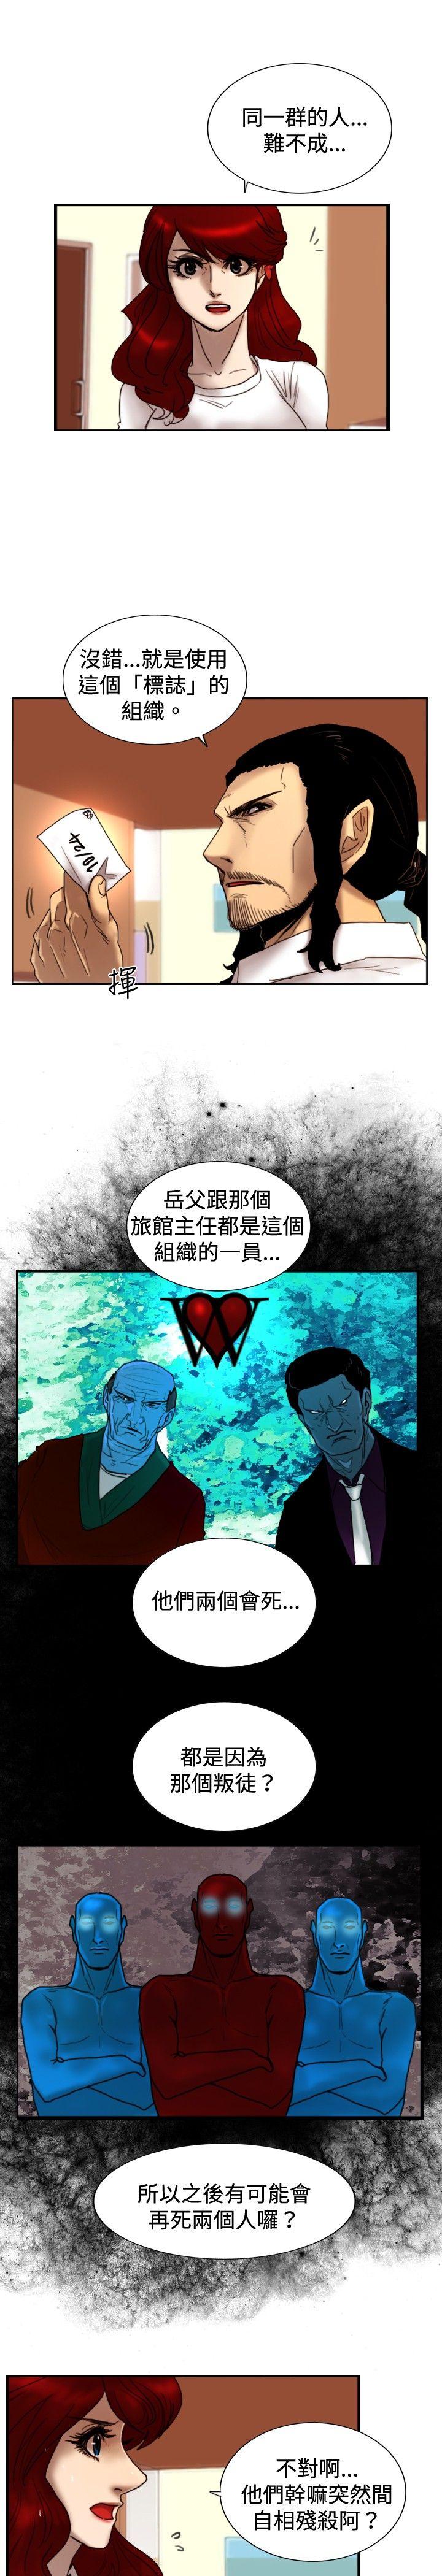 韩国污漫画 覺醒 第23话鬼 6